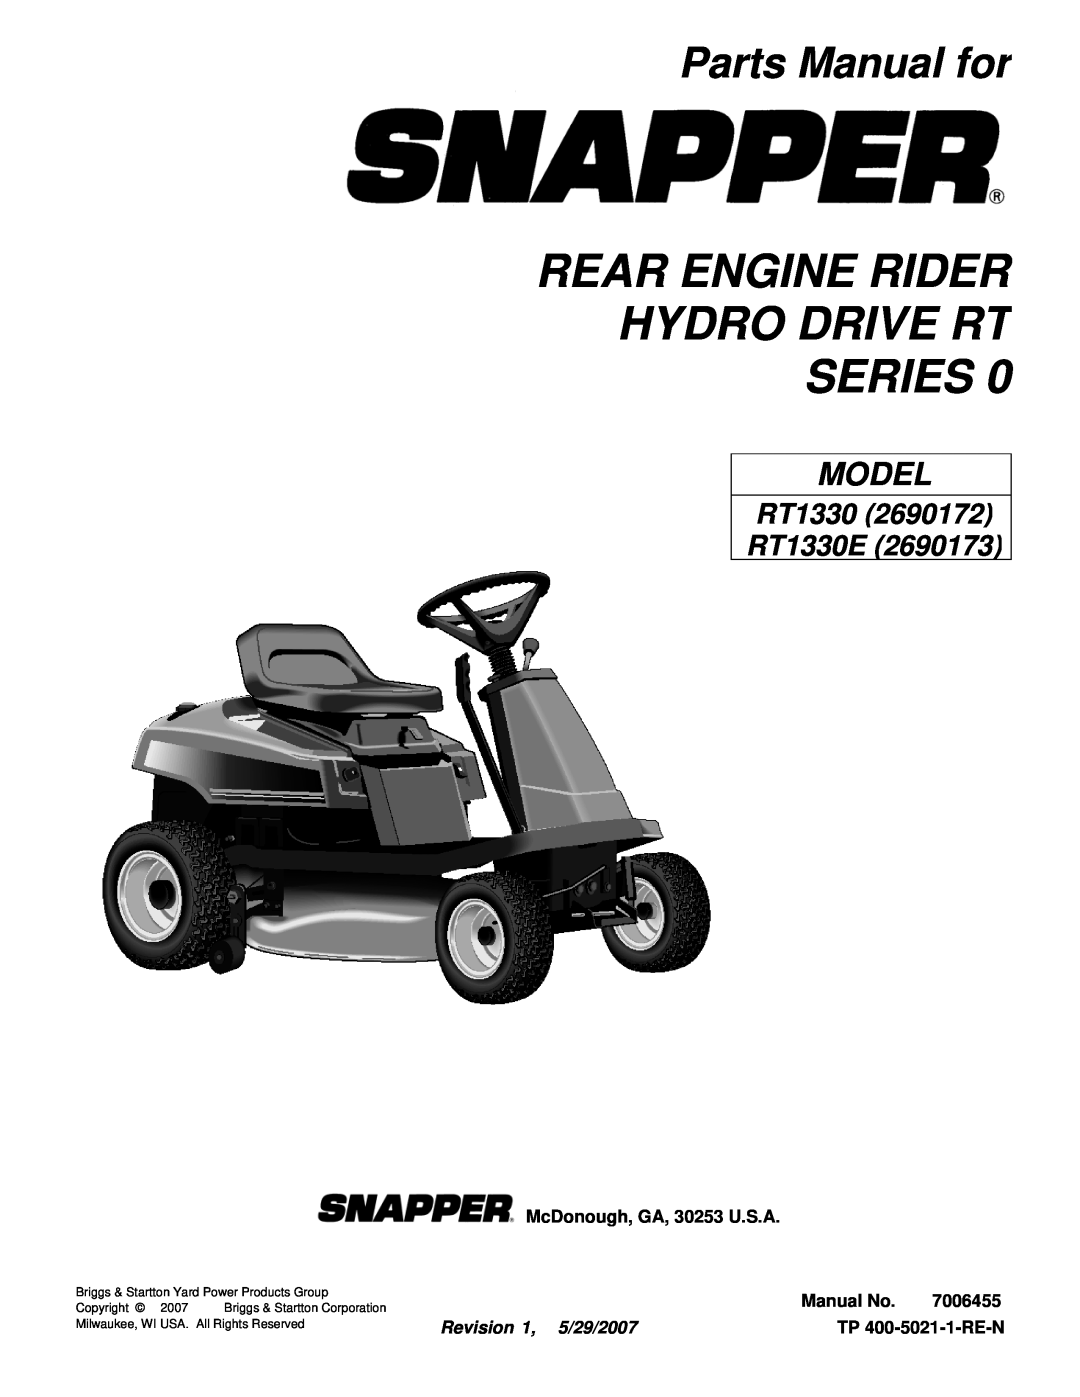 Snapper RT1330 manual Rear Engine Rider Hydro Drive Rt Series, Parts Manual for, McDonough, GA, 30253 U.S.A, Manual No 